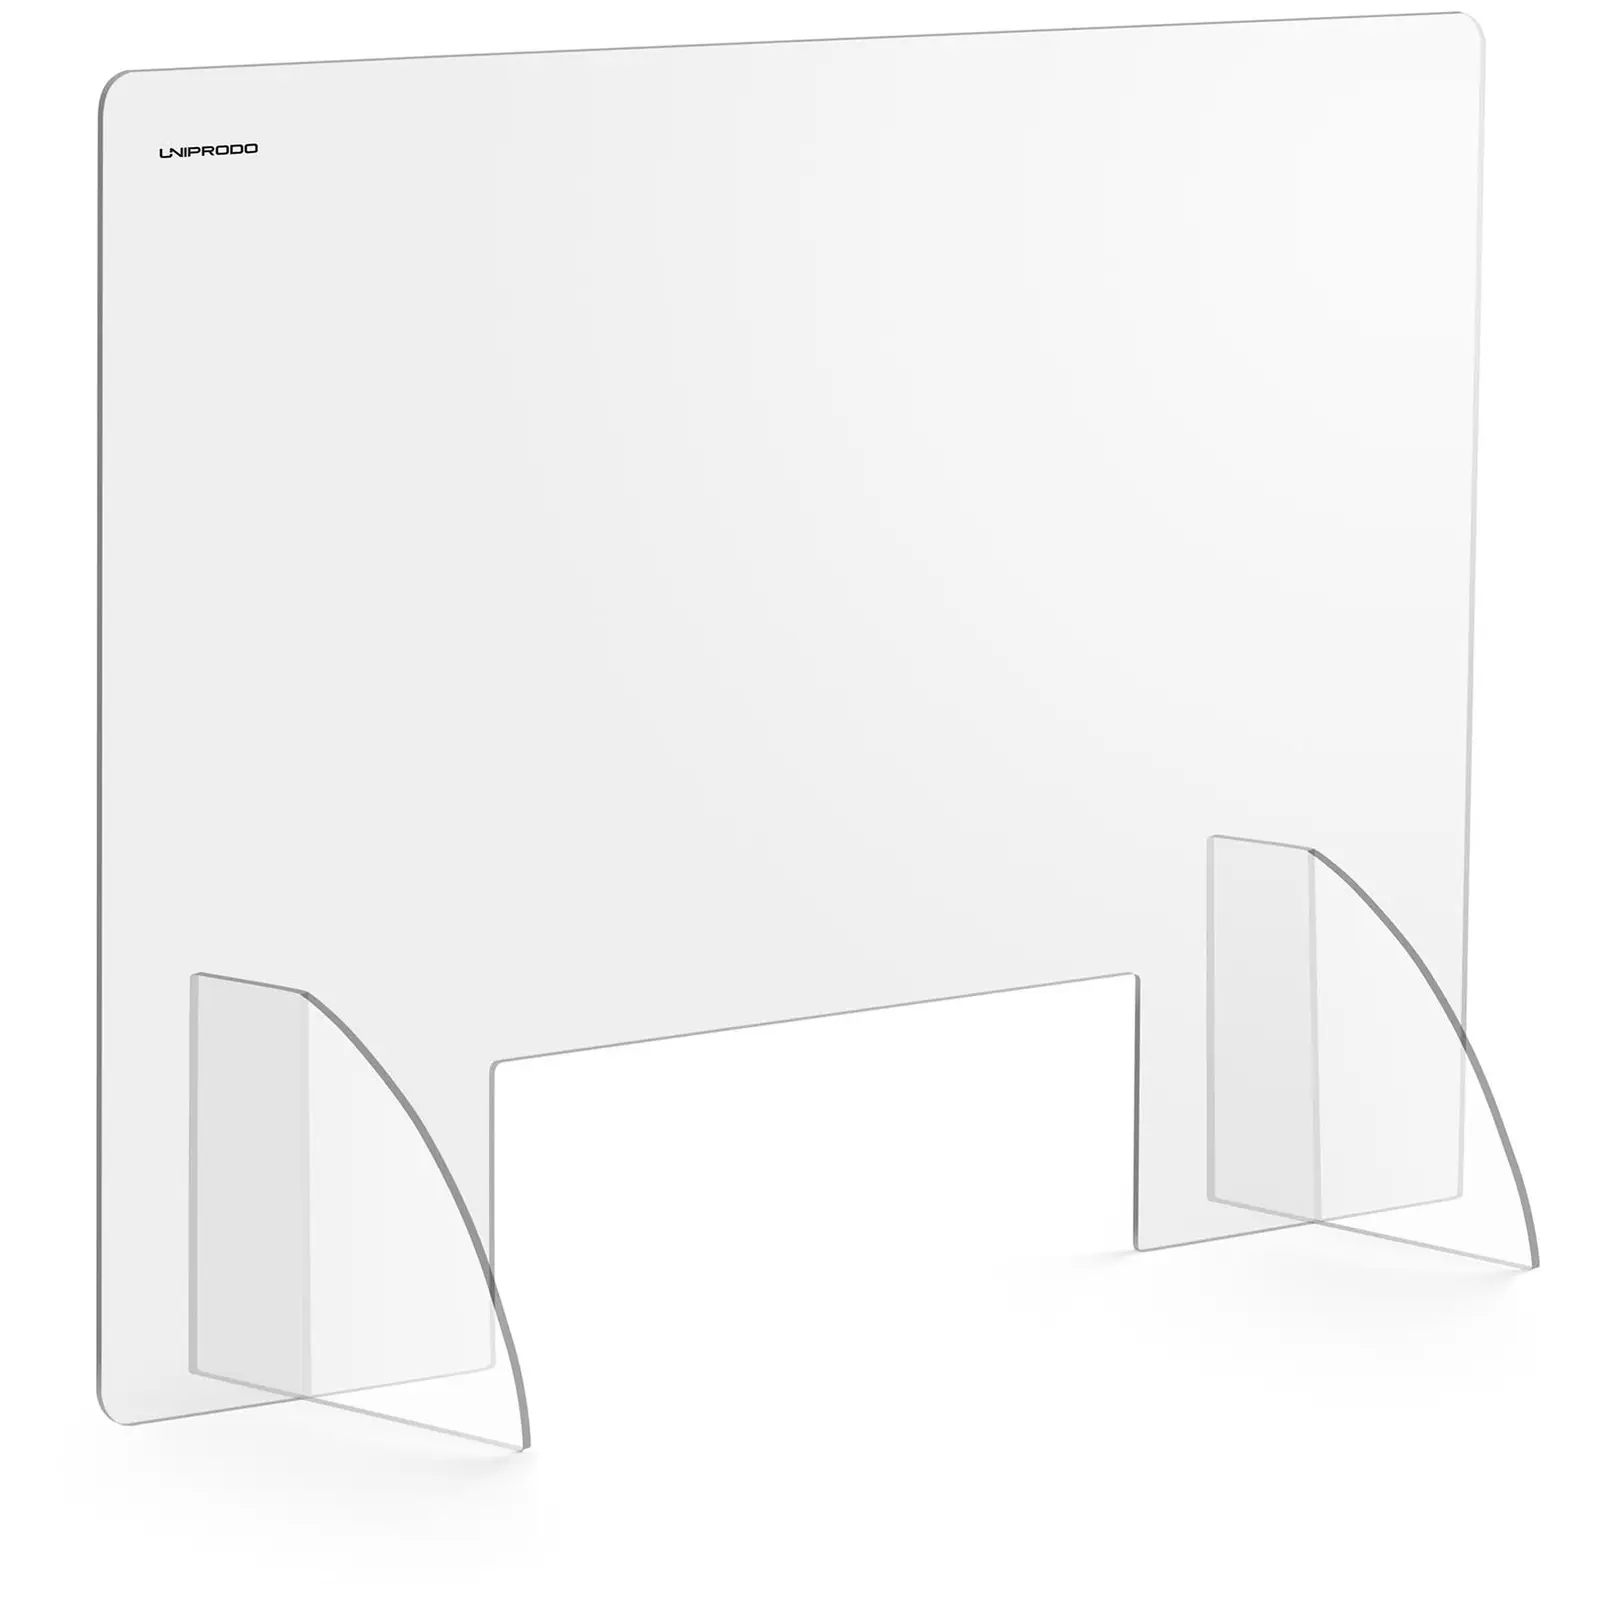 Ochranná přepážka - 95 x 65 cm - akrylátové sklo - výdejové okénko 45 x 15 cm